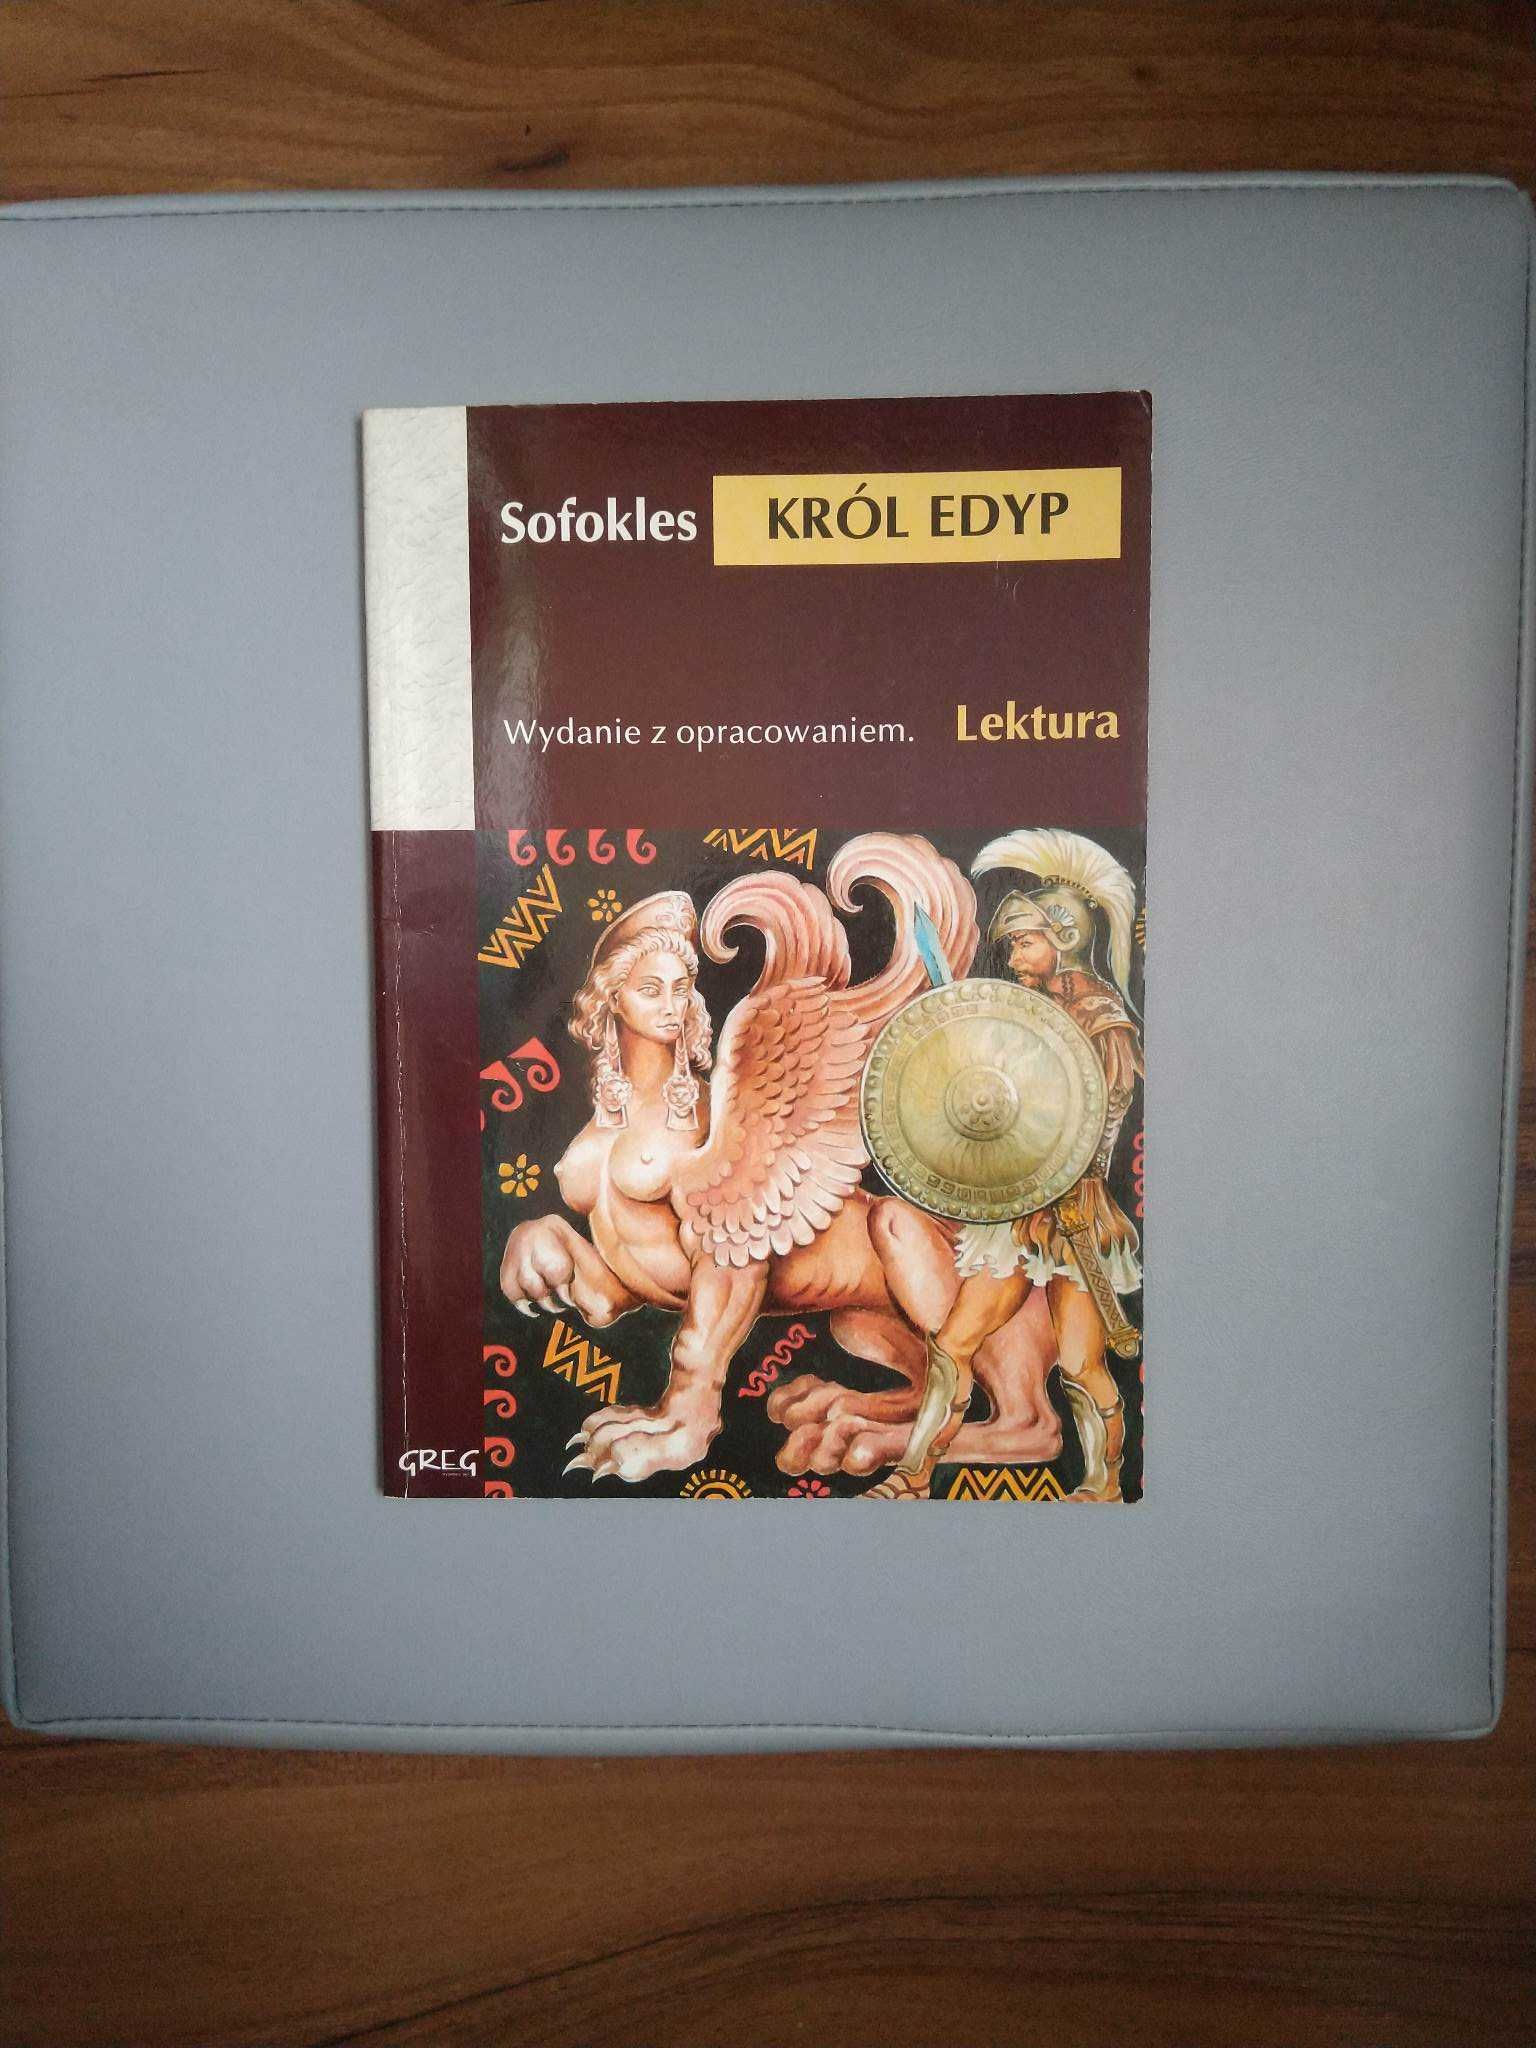 "Król Edyp", Sofokles. Lektura z opracowaniem. Wydawnictwo Greg